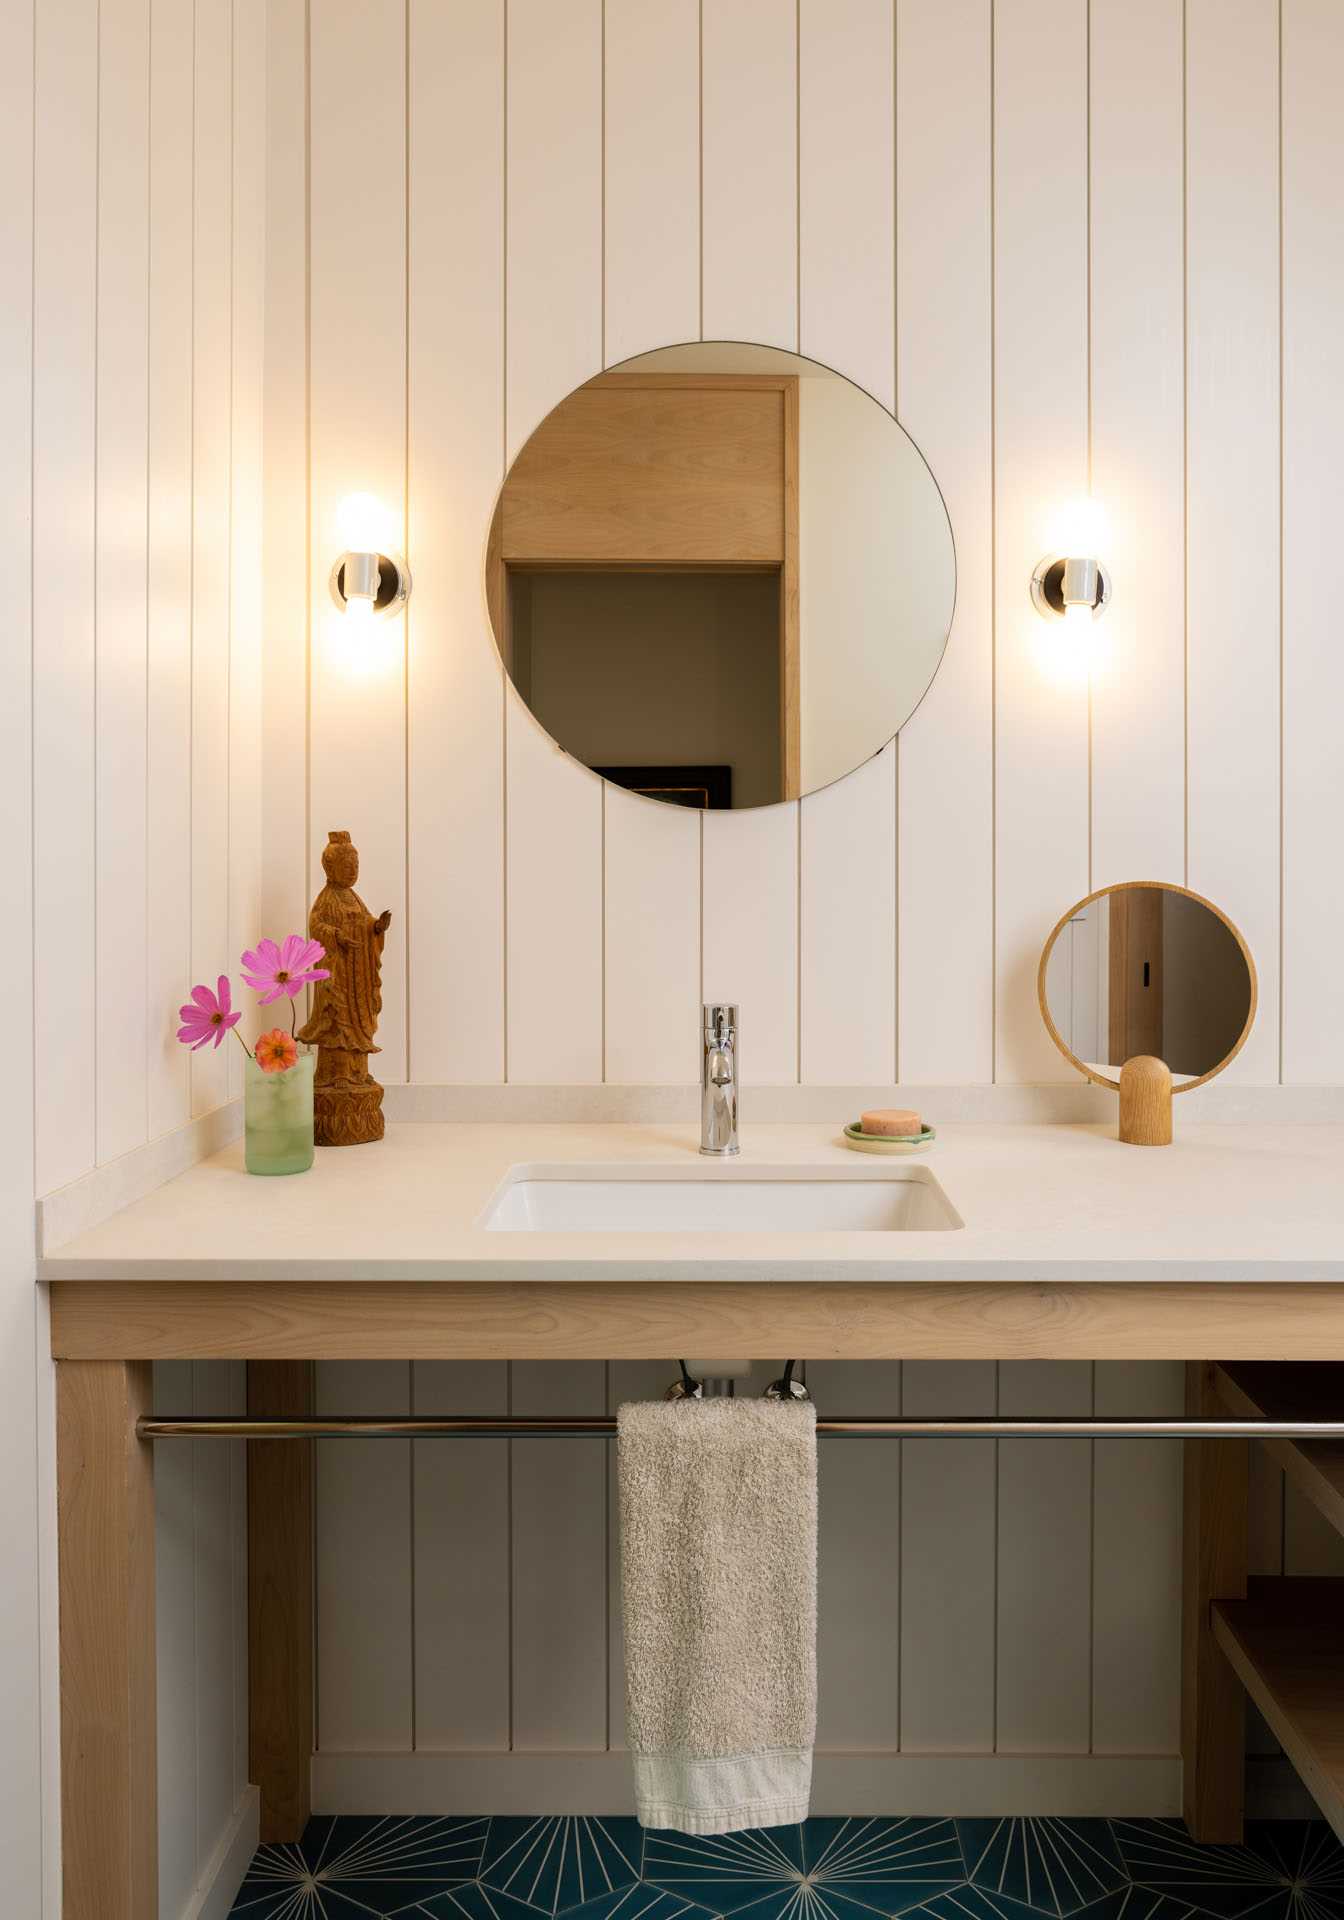 حمام مزرعه‌ای معاصر با روشویی چوبی و آینه گرد.